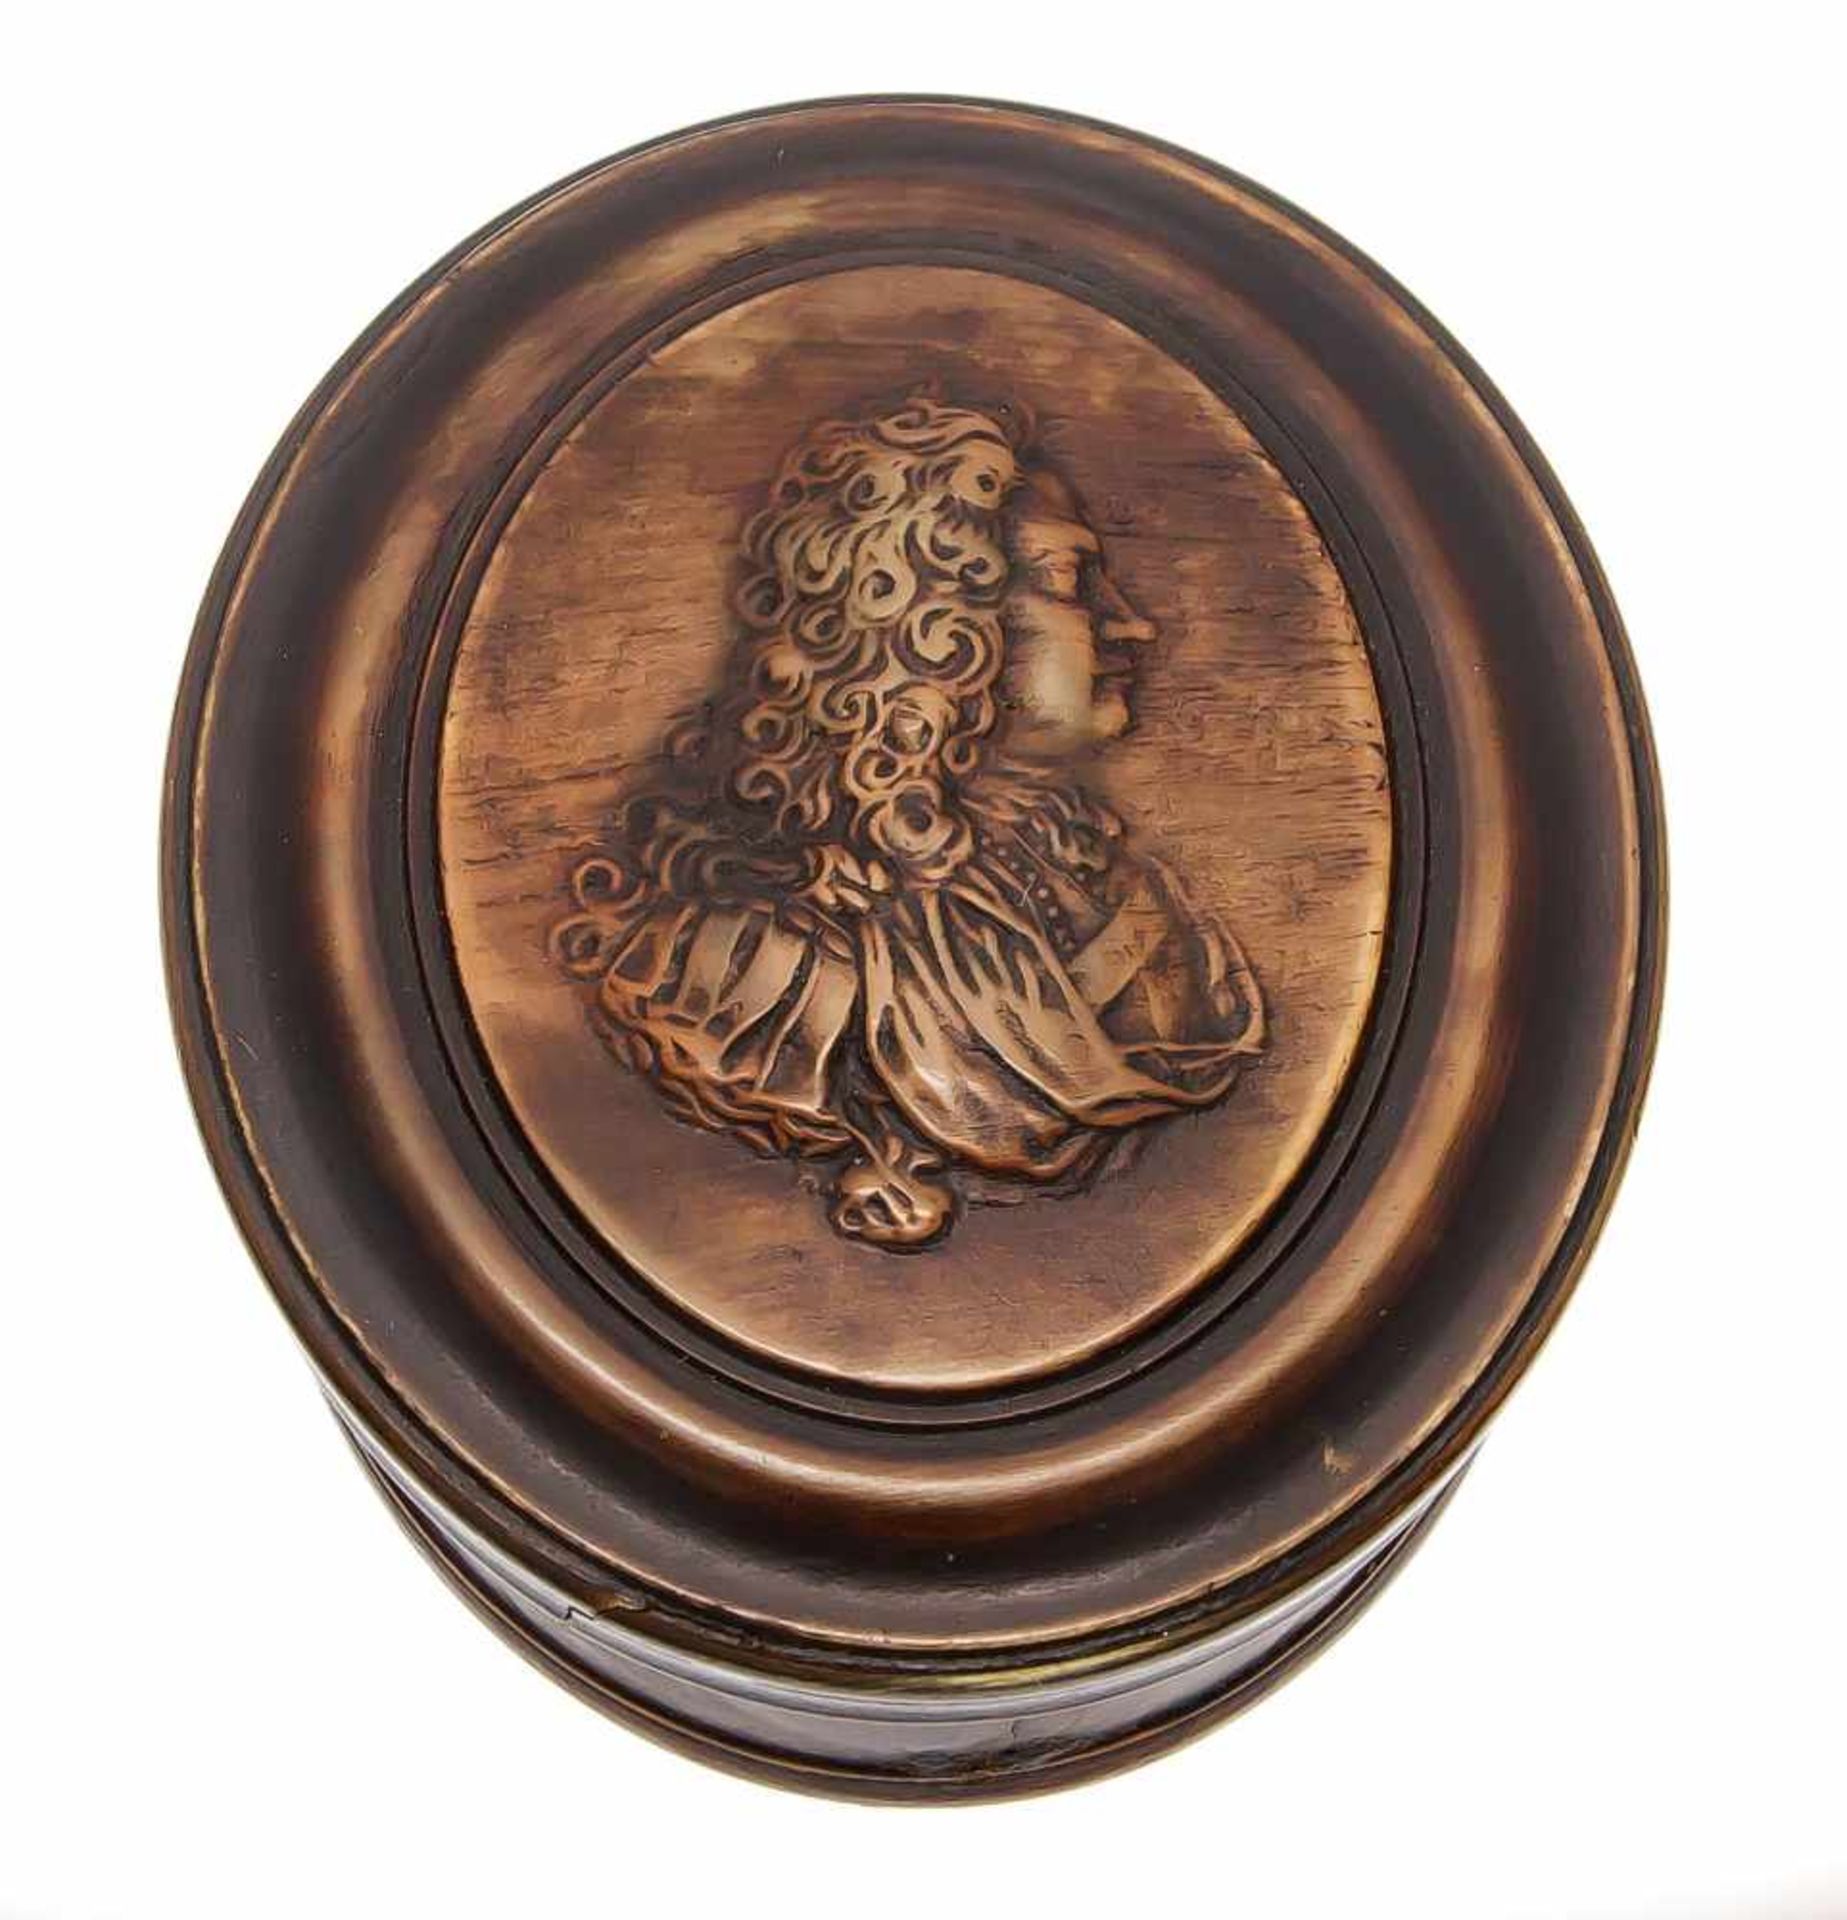 Ovale Dose, 18. Jh. Horn, auf profiliertem Deckel reliefiertes Brustporträt eines Herrenim Profil